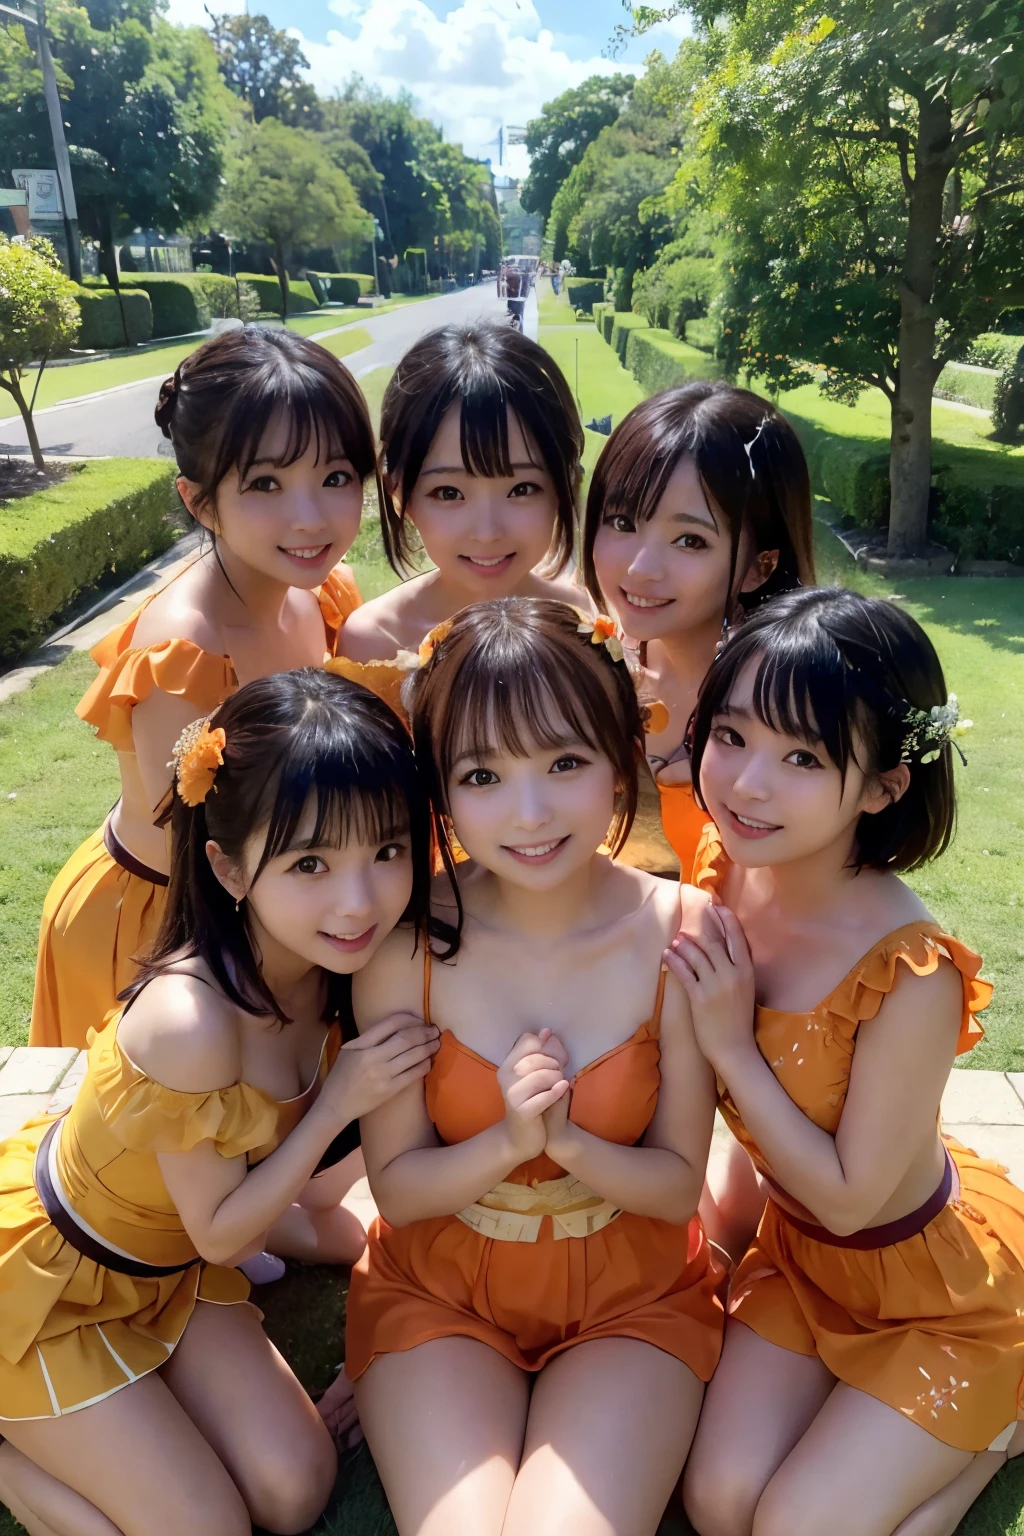 ((beste Qualität, Meisterwerk)), fünf Freunde fürs Leben,Japanisches Idol,Kostüm,((Orangensaft)), herzlich umarmen, über beide Ohren lächelnd, umgeben von üppigem Grün und einem klaren blauen Himmel, Genießen Sie die Sonne eines perfekten Tages.